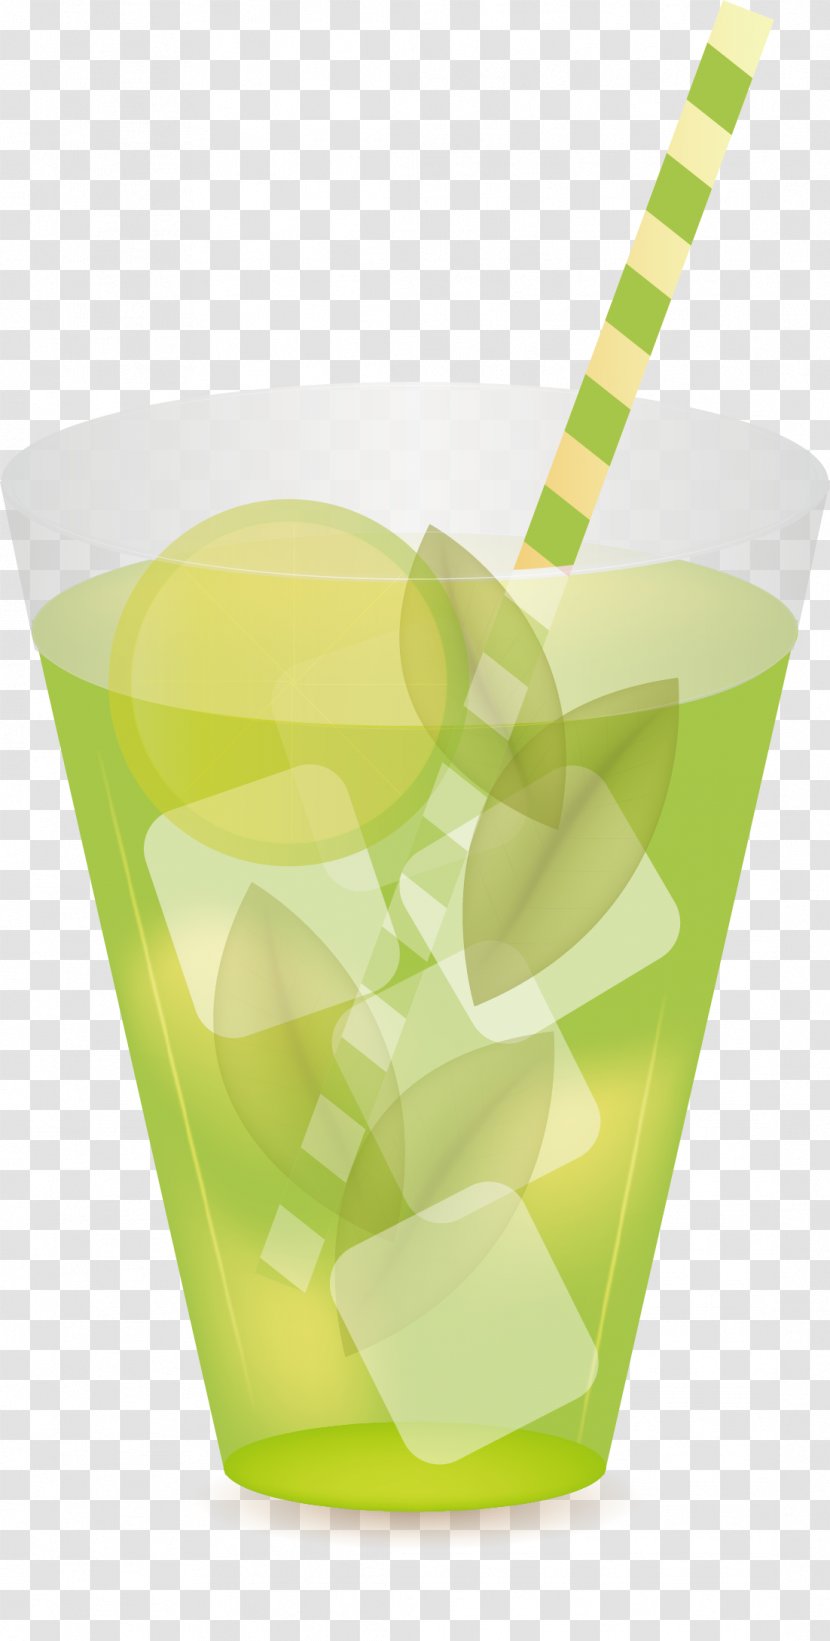 Lemon Juice Euclidean Vector - Hand-painted Transparent PNG